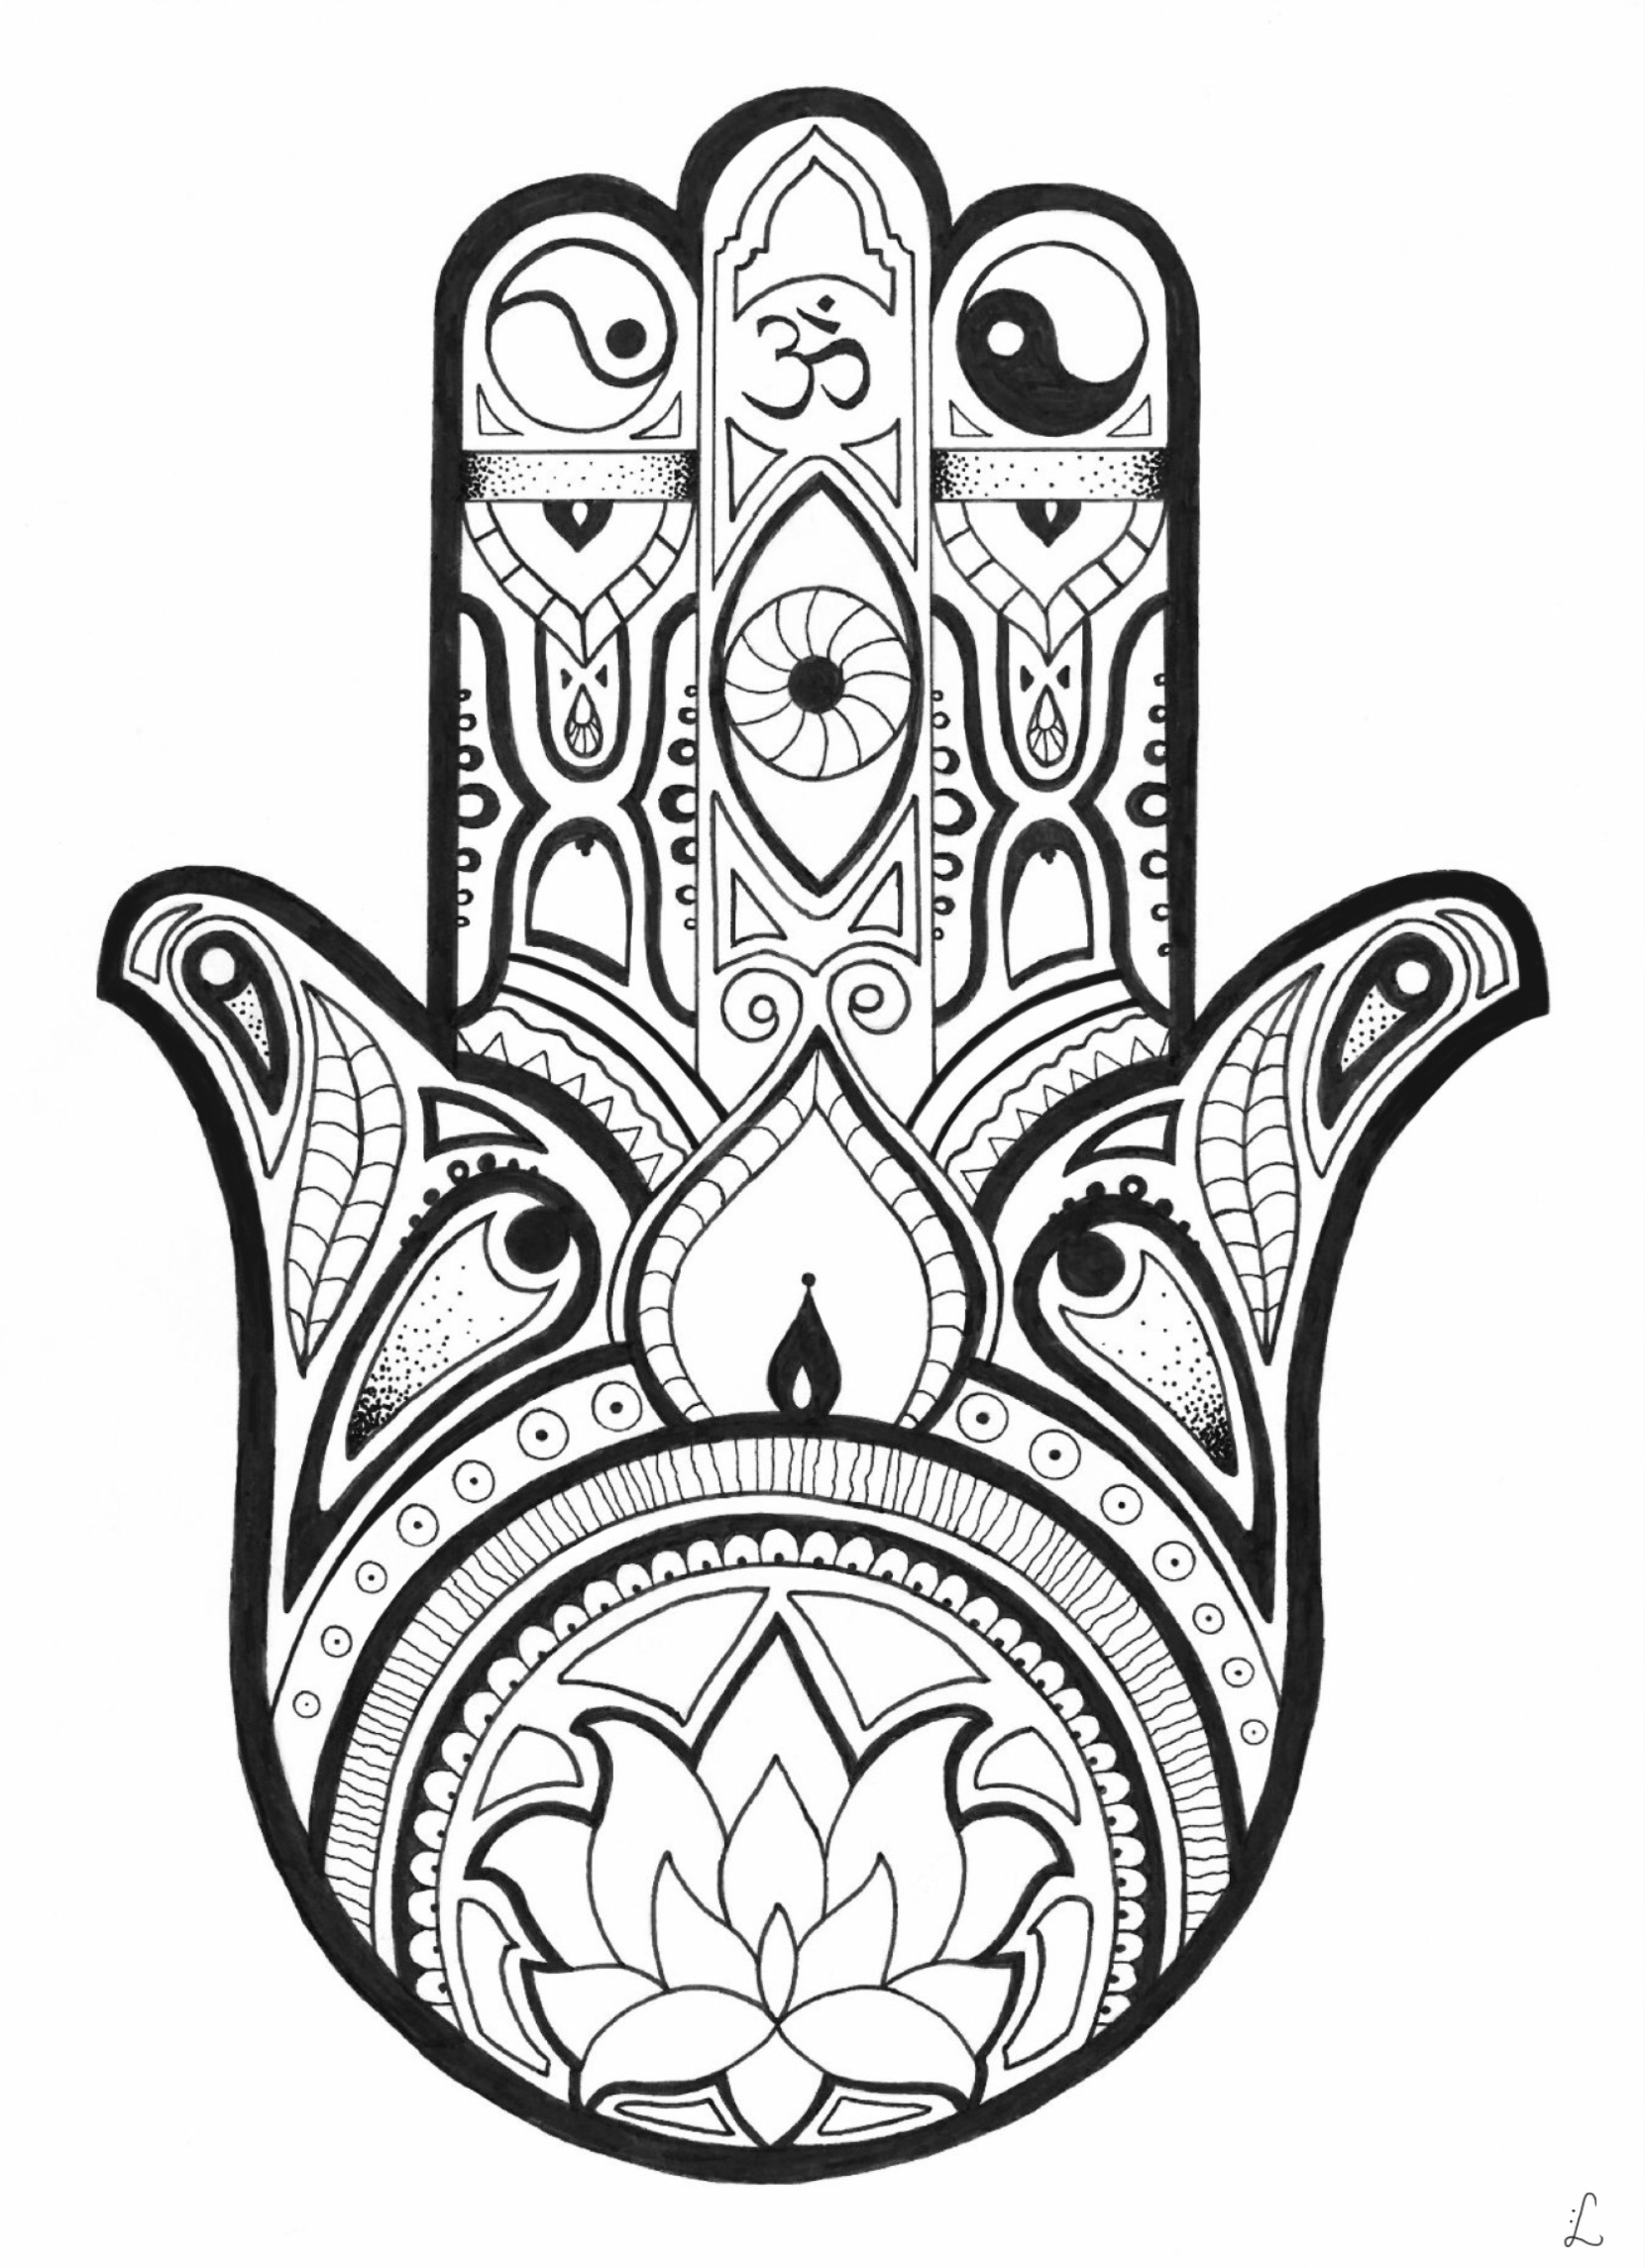 A mão da Fatma com pormenores, um desenho inspirado no estilo Zentangle